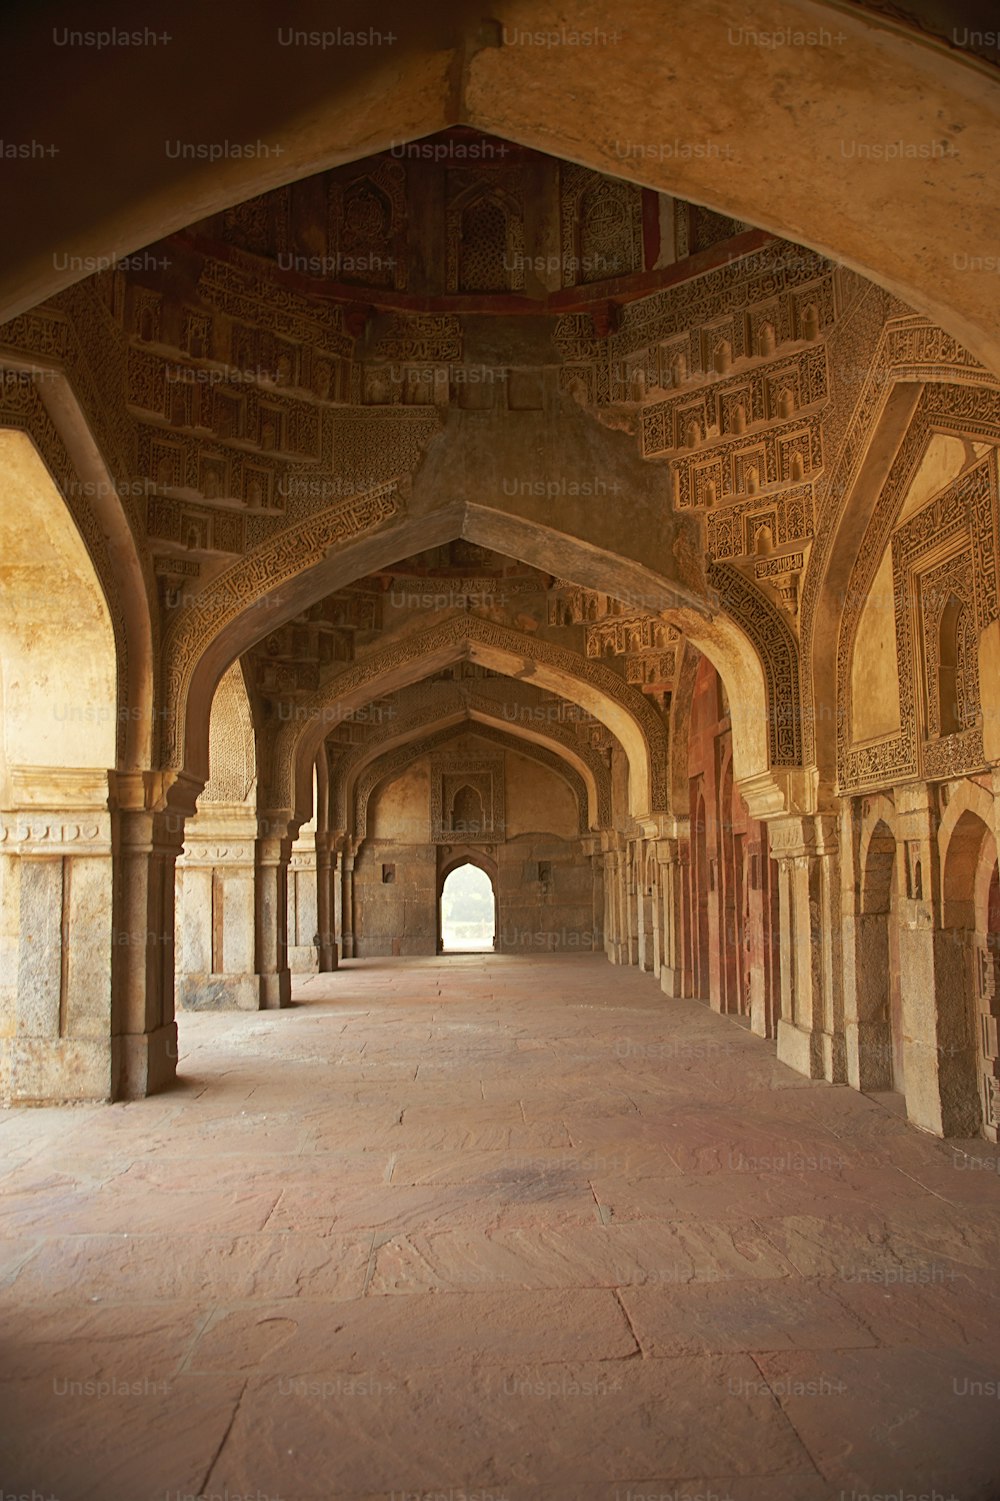 Une photo du Fort d’Amber à Agra, Inde